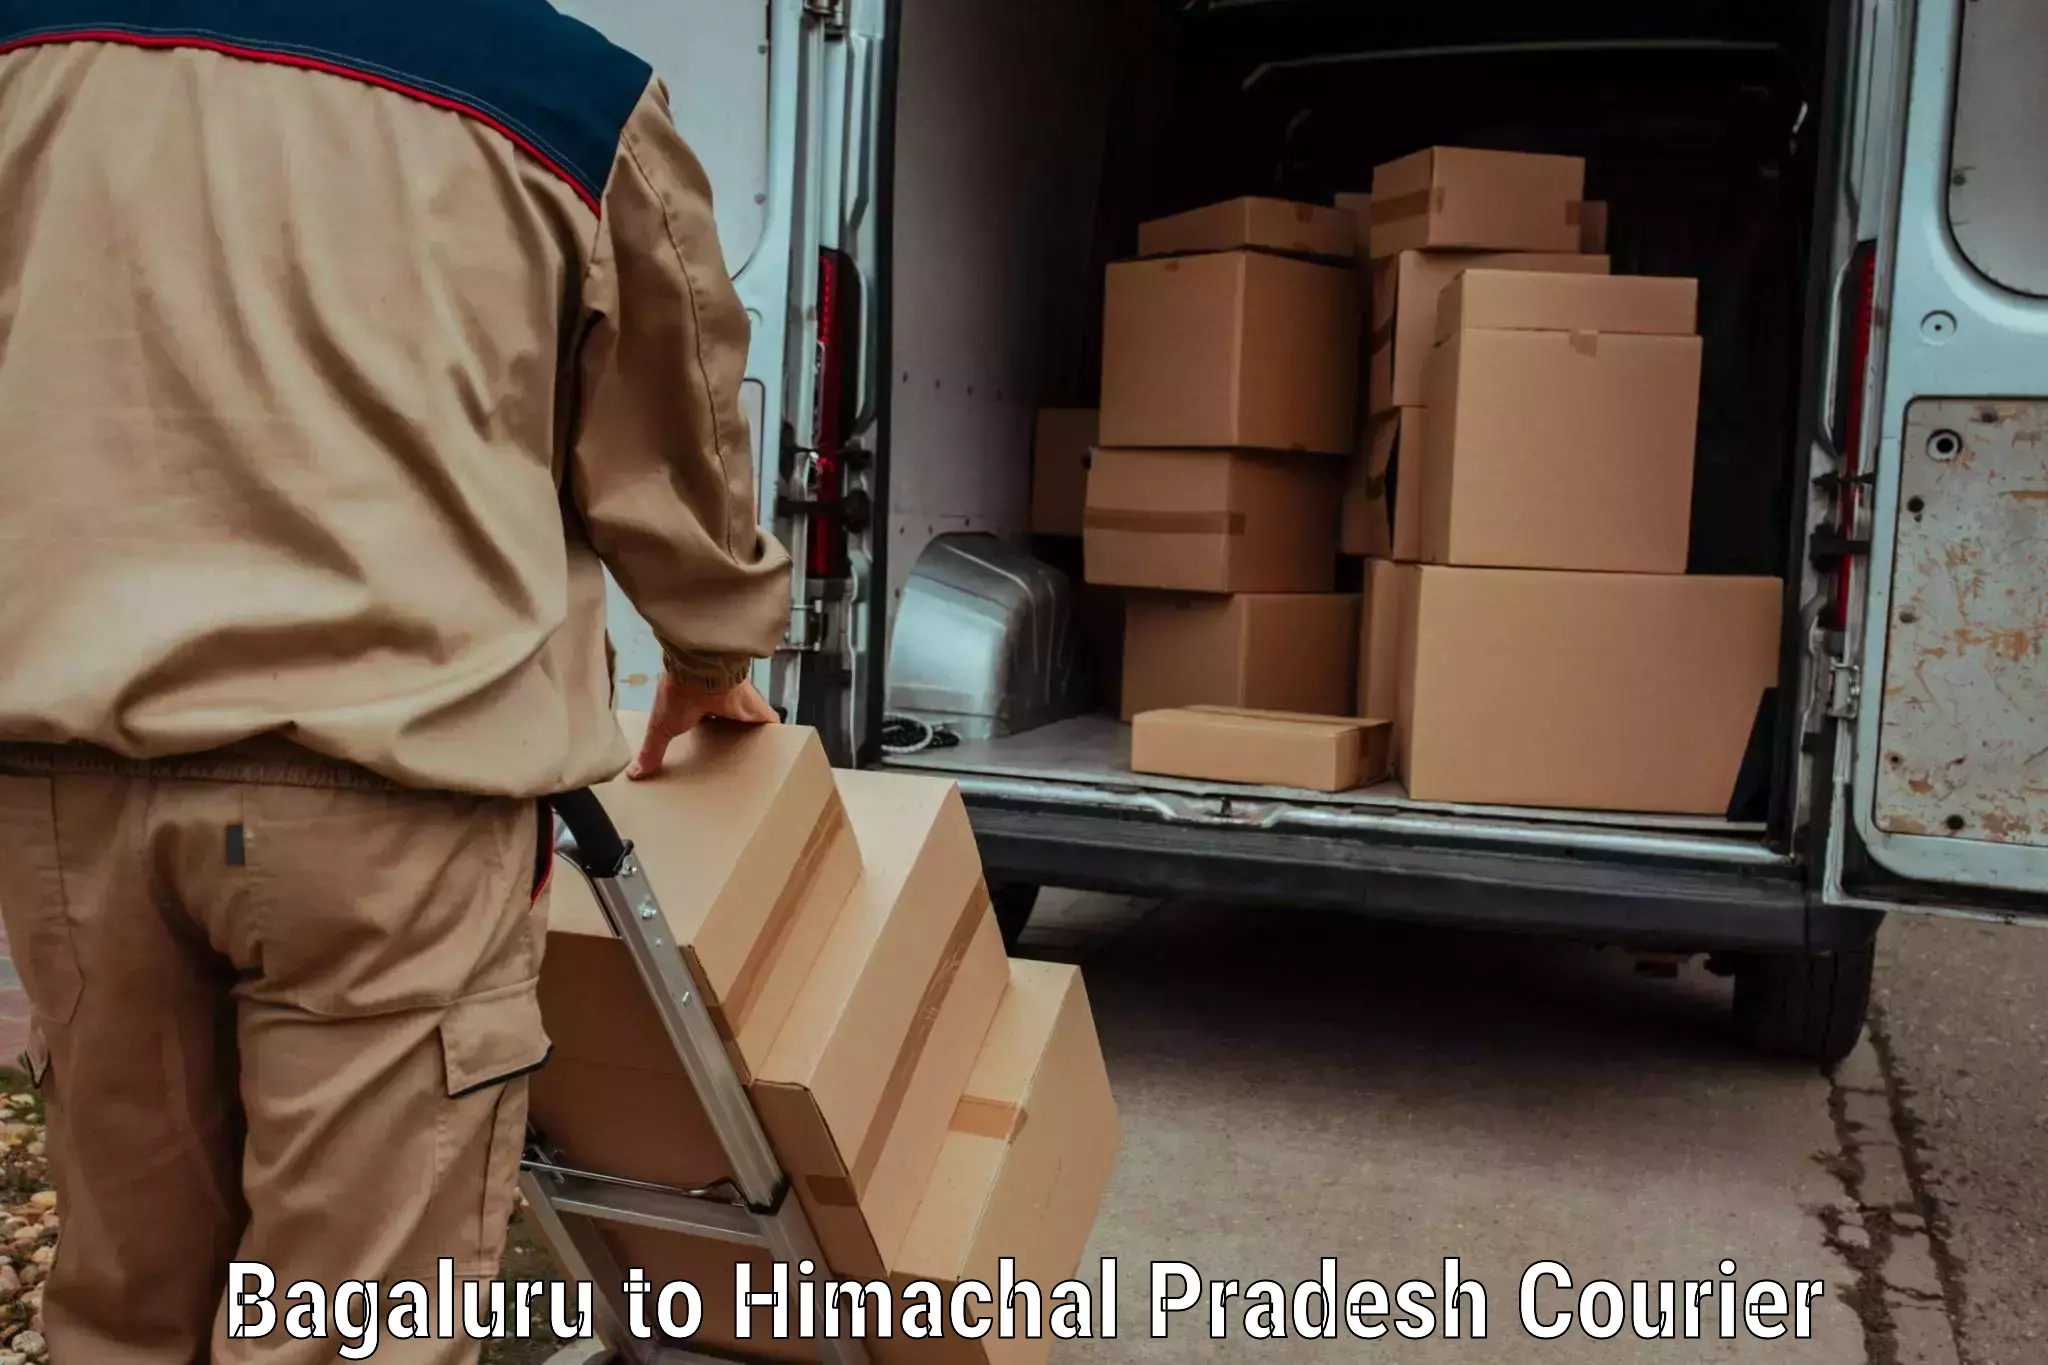 Baggage transport professionals Bagaluru to Himachal Pradesh